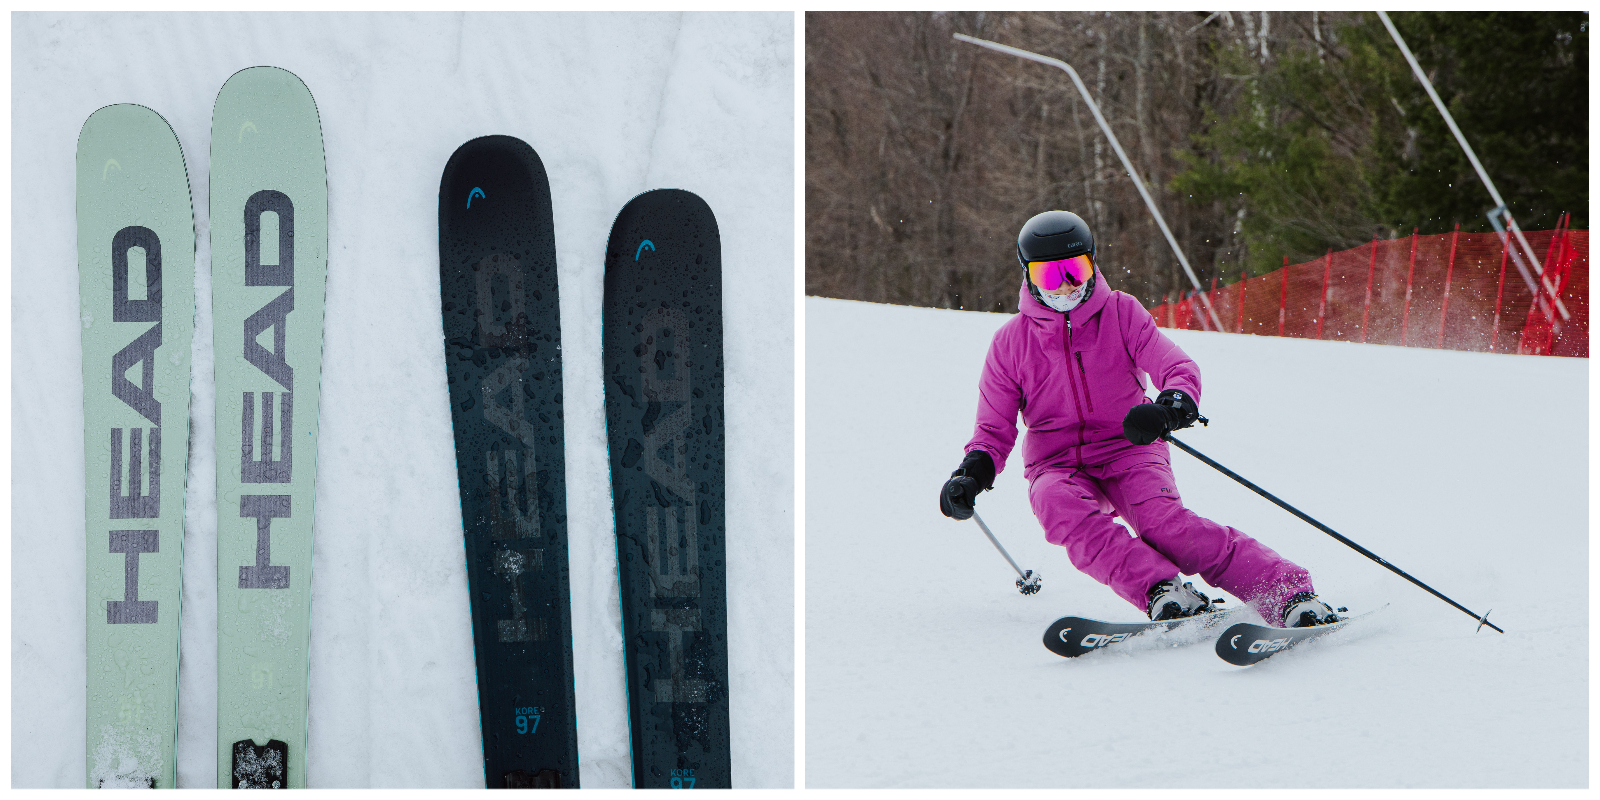 Skiing, ski test, skis, winter, snow, mountains, Sunapee Mountain, New Hampshire, FW, Strafe, Flylow, Orage, Anon, Giro, Smith, Head Kore, Head skis